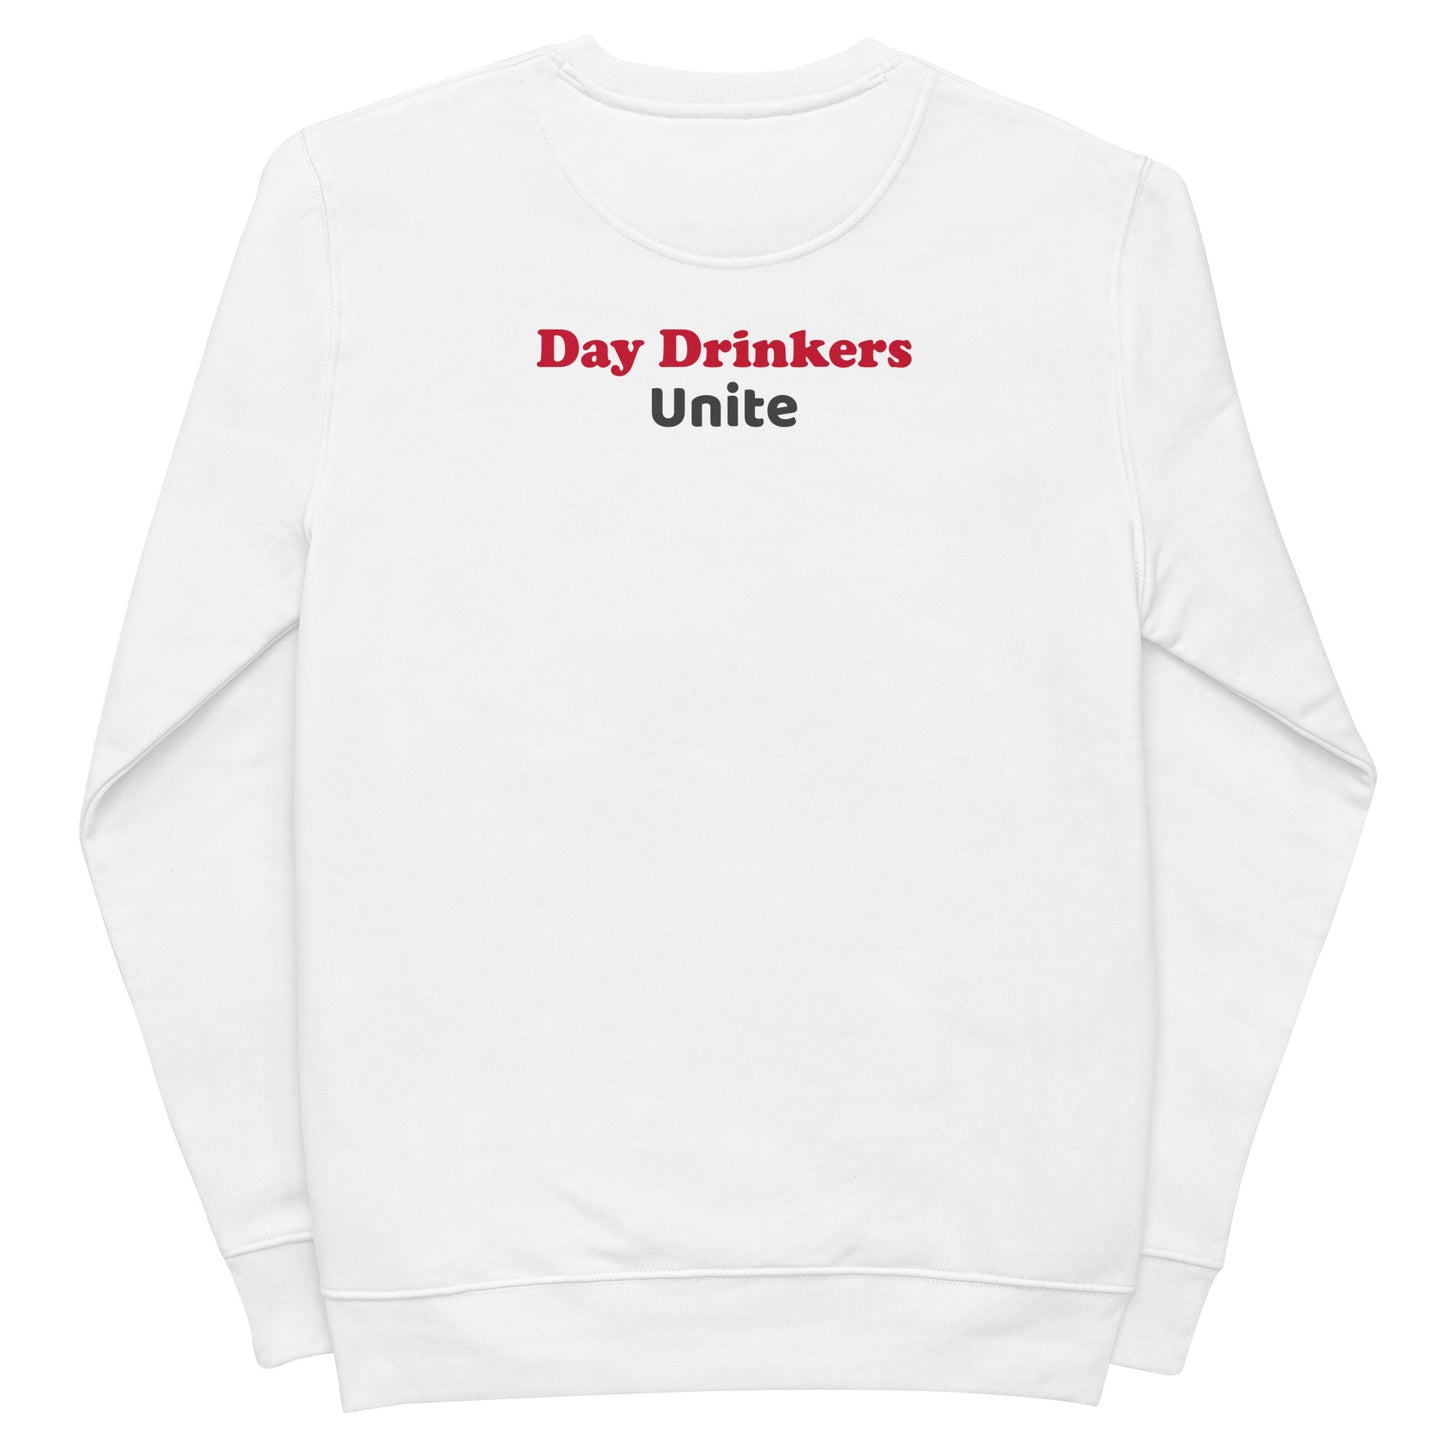 Day Drinkers Unite eco sweatshirt